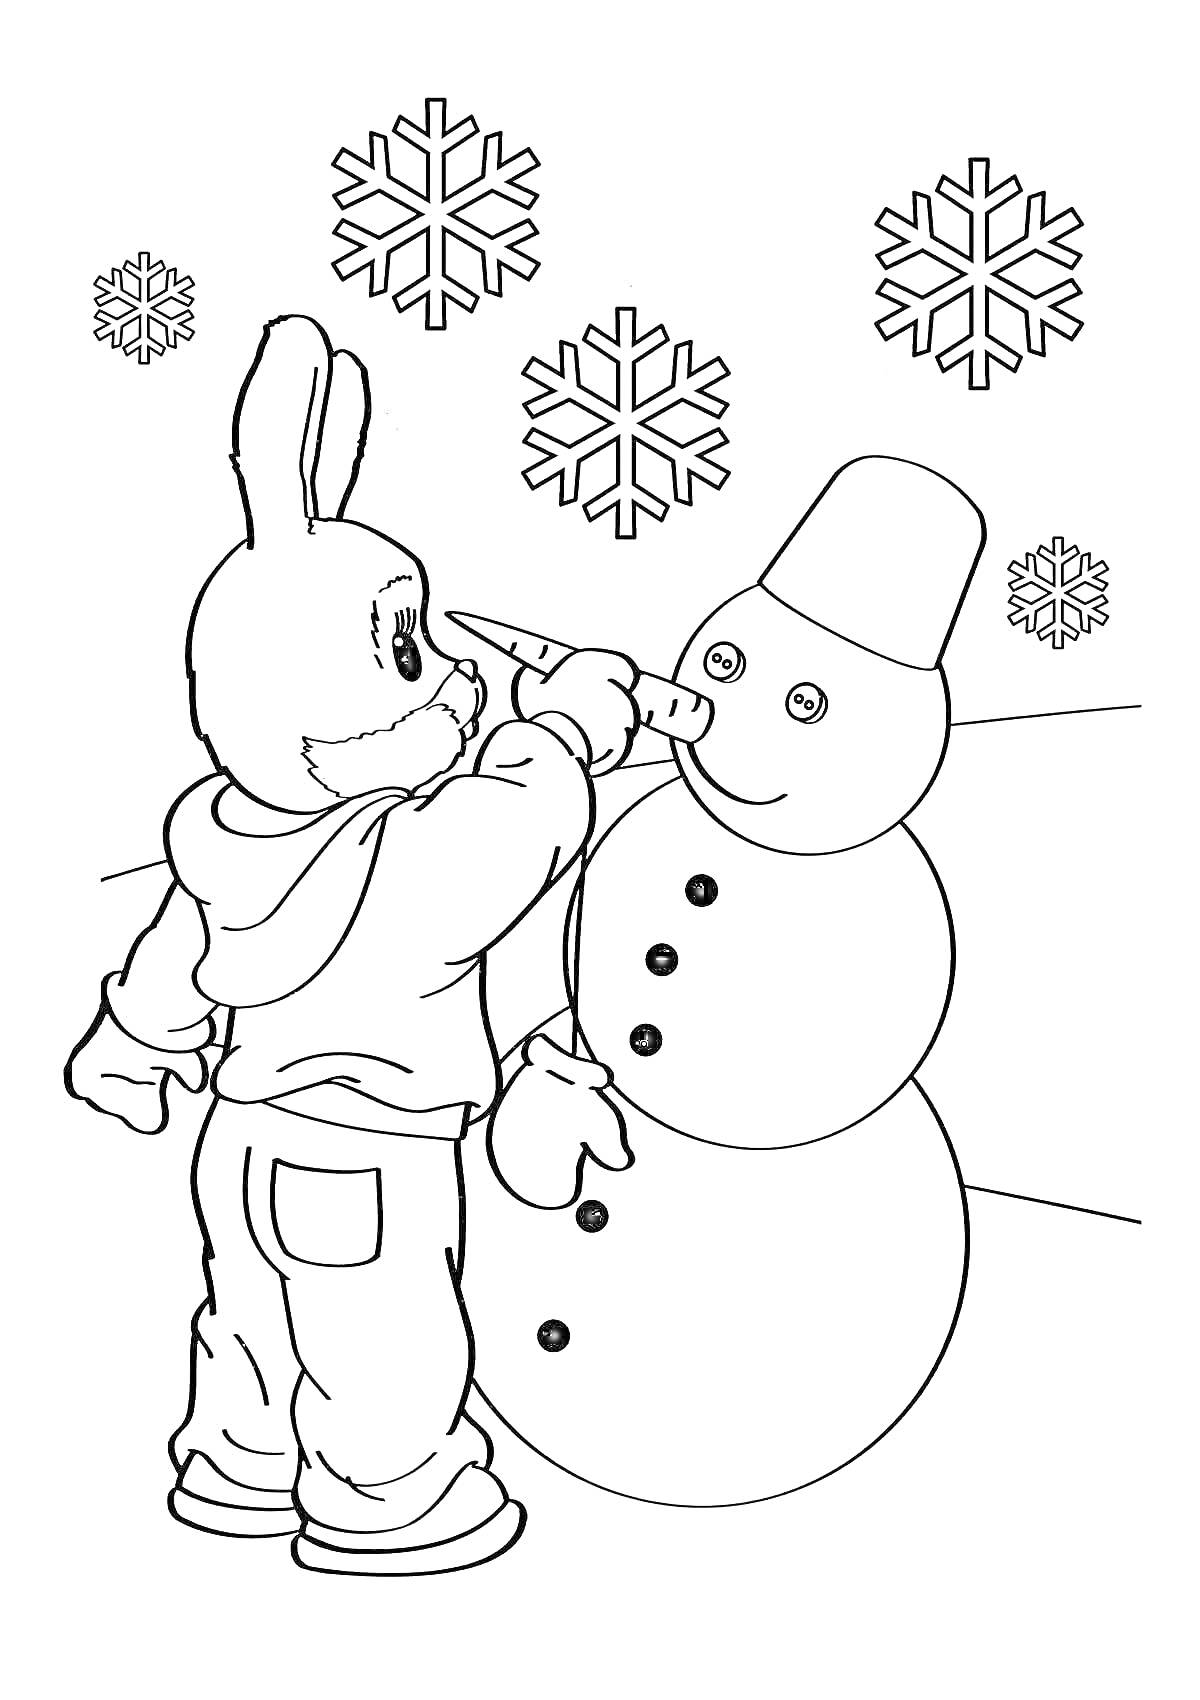 Раскраска Заяц делает снеговику нос морковку, зеленый снеговик с тремя снежинками на заднем плане